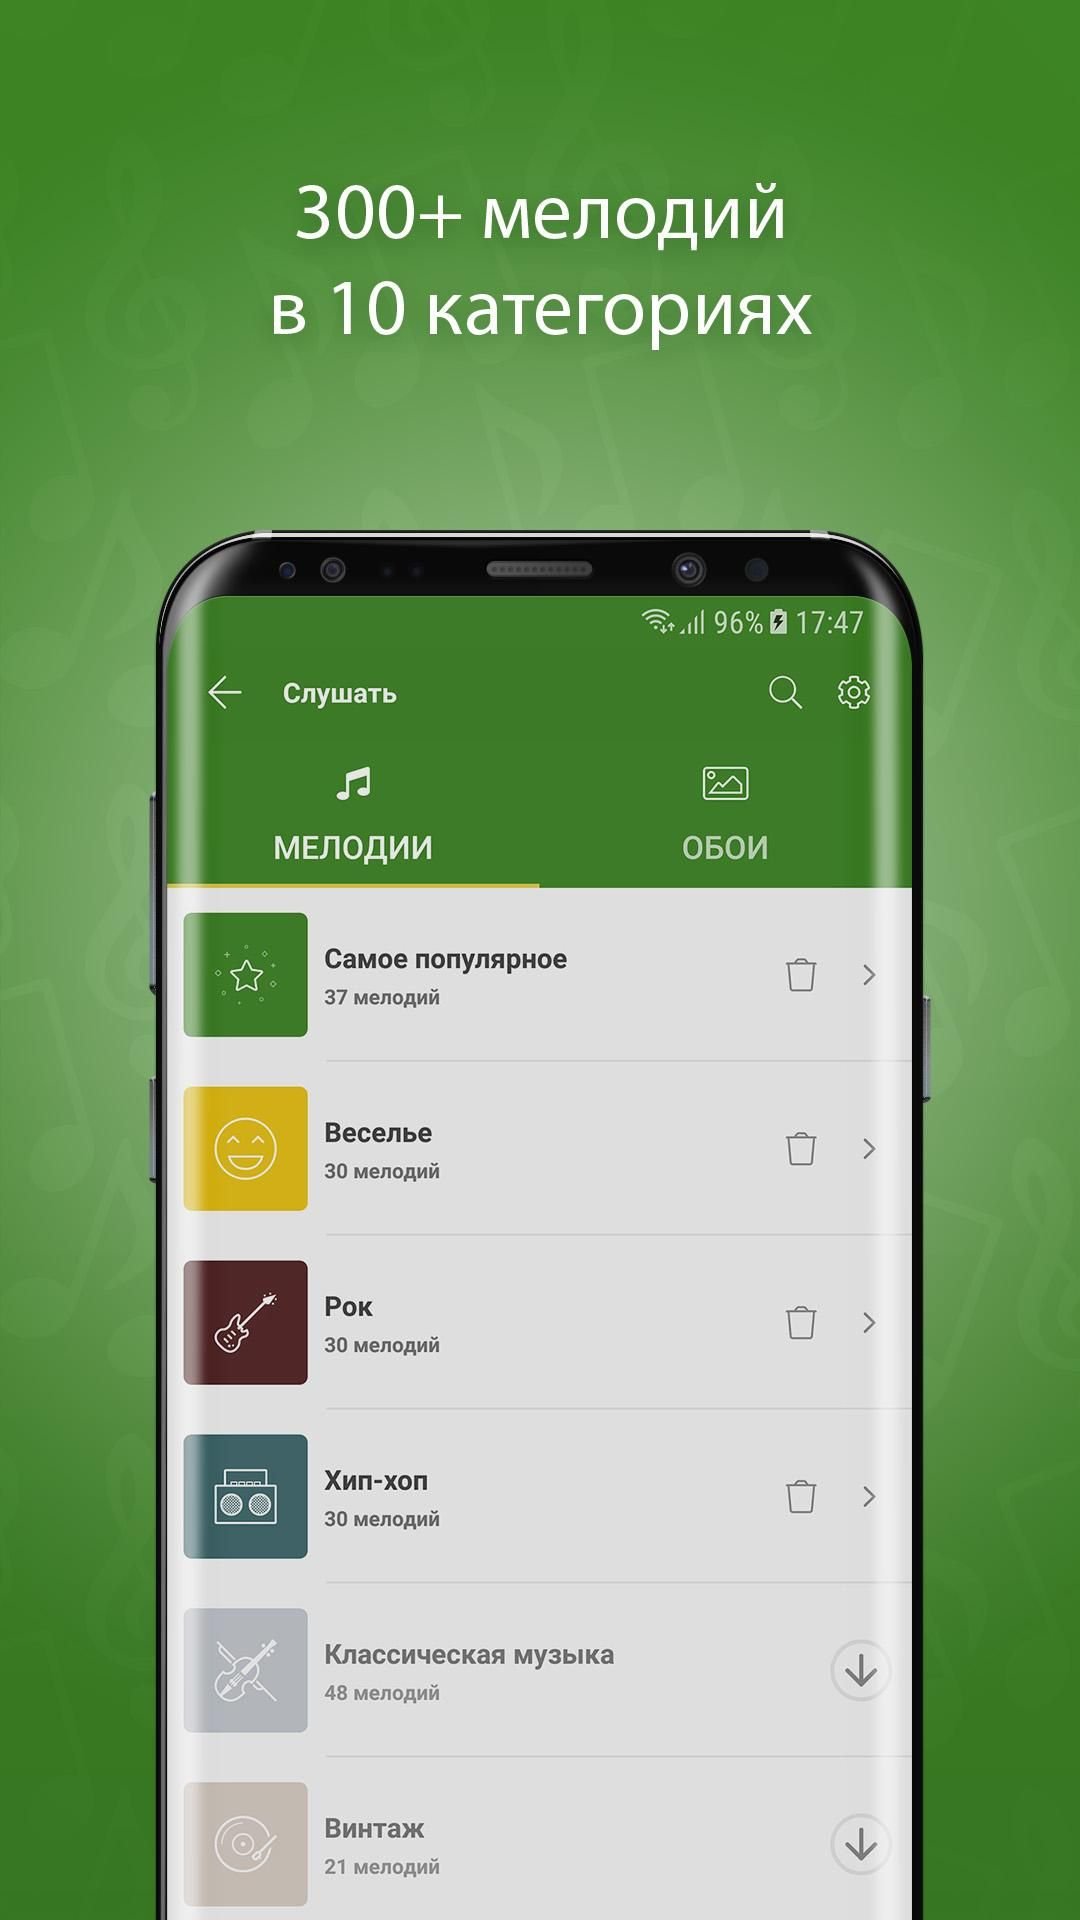 Приложение телеграмм скачать бесплатно на телефон русском языке андроид и установить бесплатно фото 98